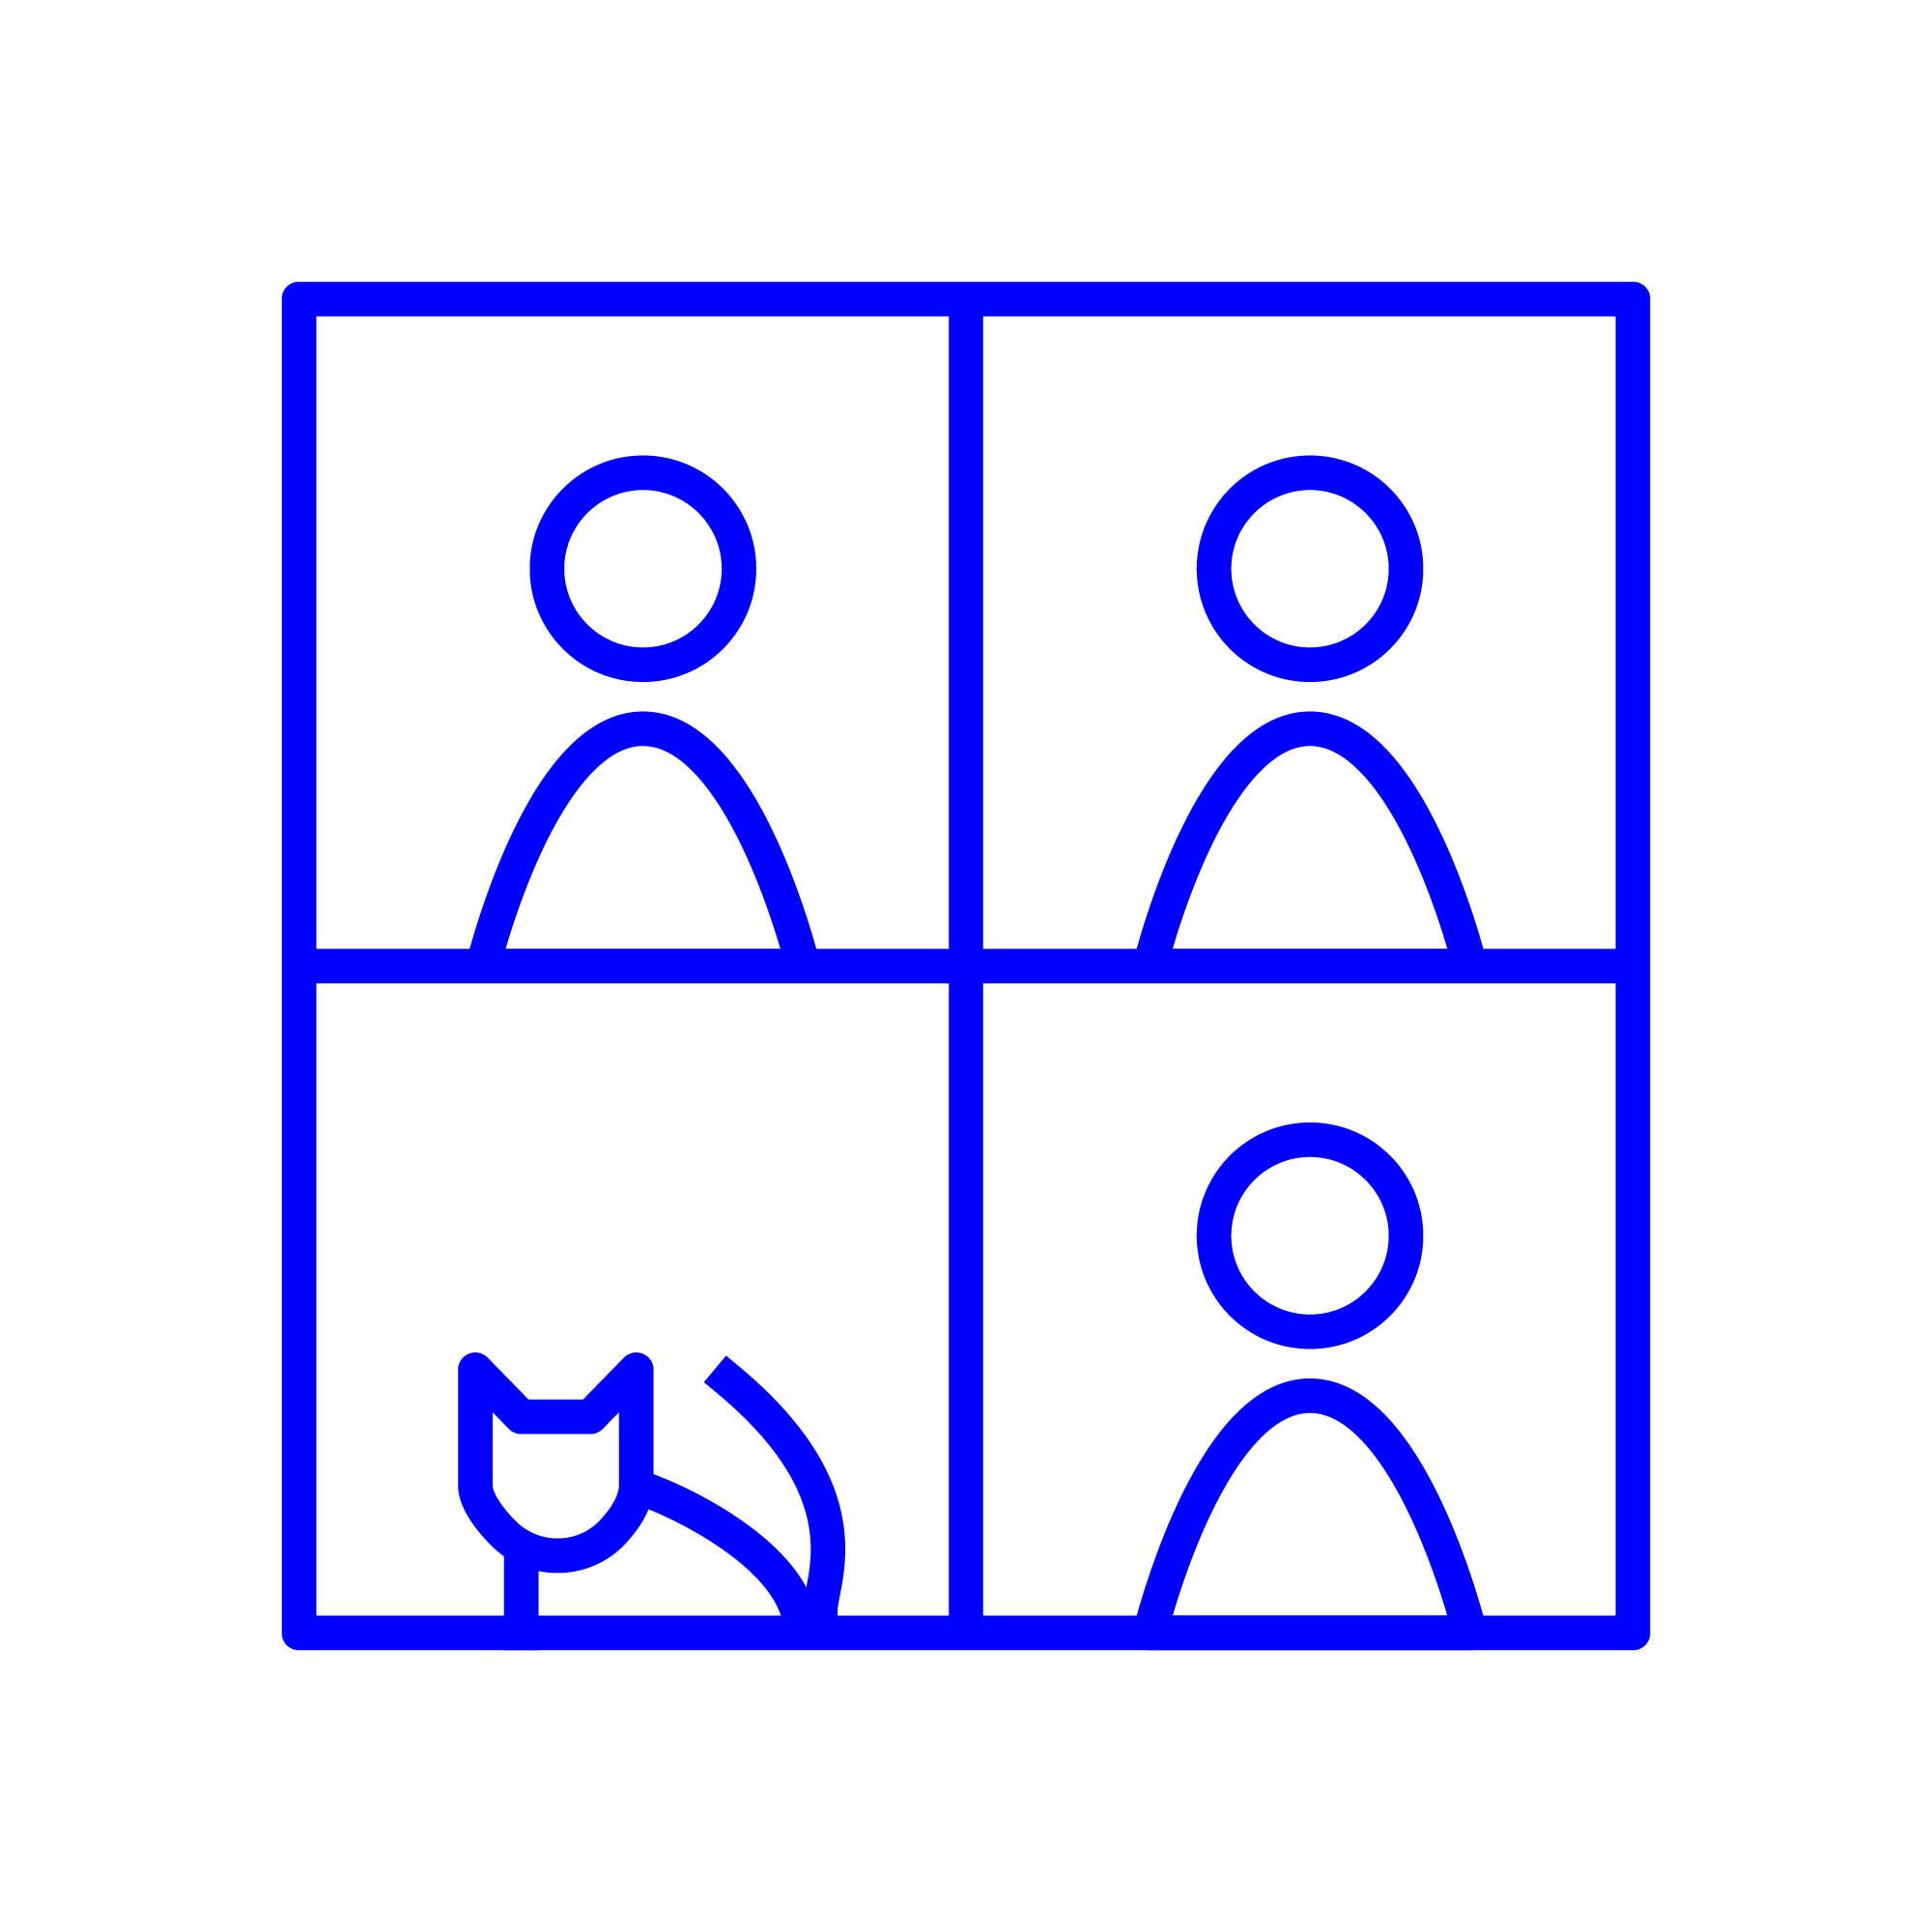 Abstrakte grafische Darstellung eines Bildschirms mit vier Kacheln als Symbol für eine Online-Sprechstunde; in drei von vier Kachel sind Menschen zu sehen, in der anderen befindet sich eine Katze